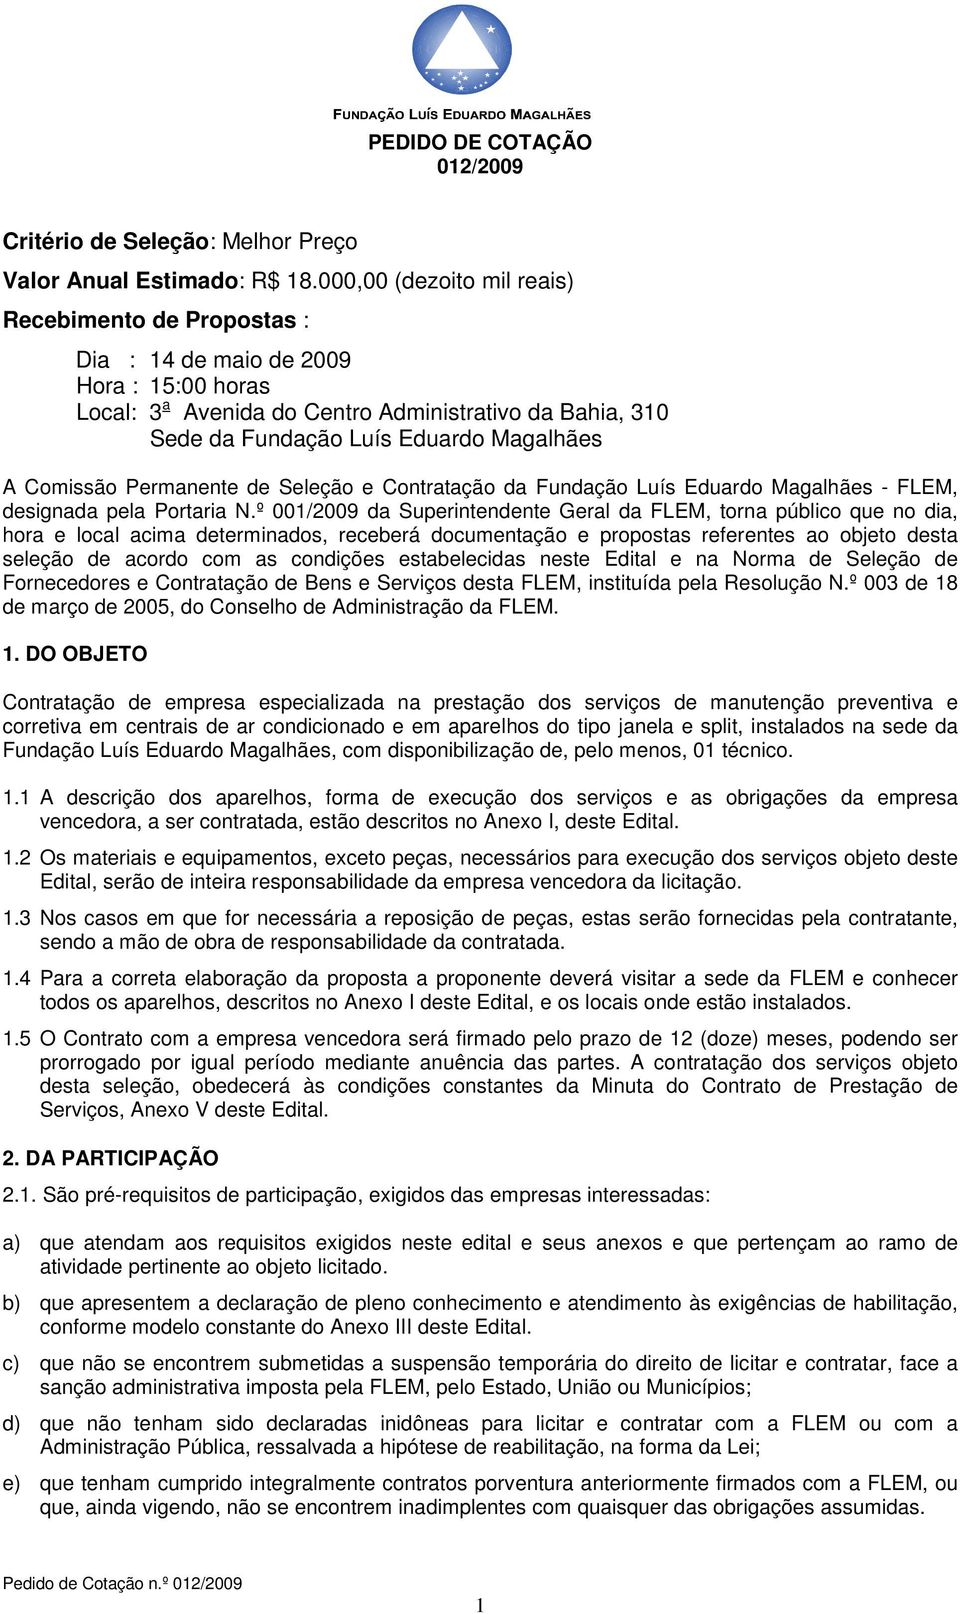 Comissão Permanente de Seleção e Contratação da Fundação Luís Eduardo Magalhães - FLEM, designada pela Portaria N.